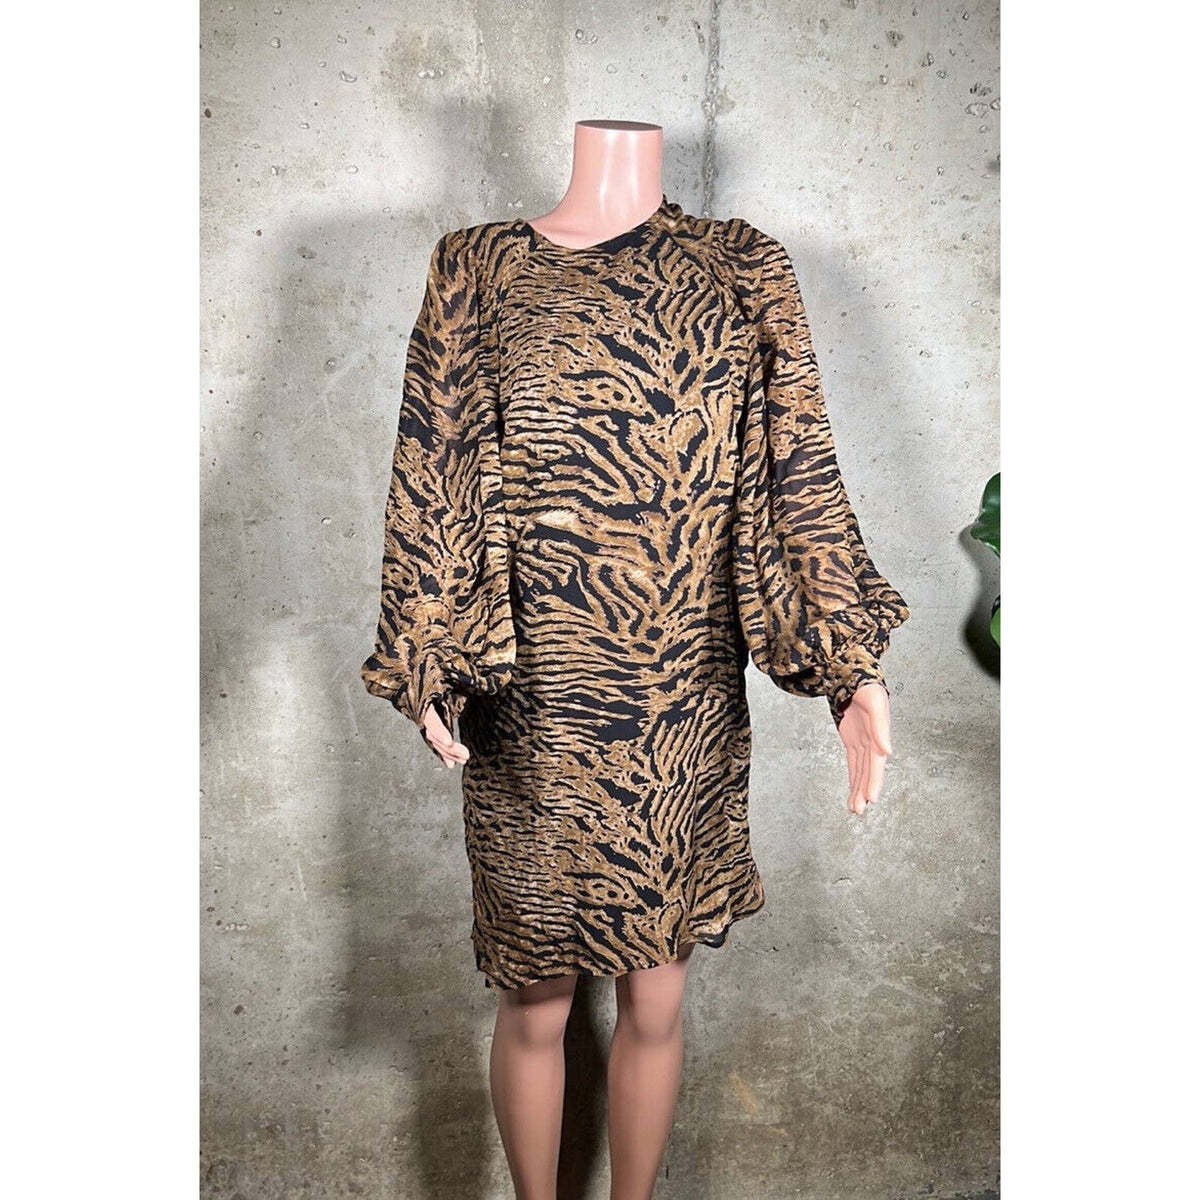 Ganni Leopard Dress Sz.8(40)